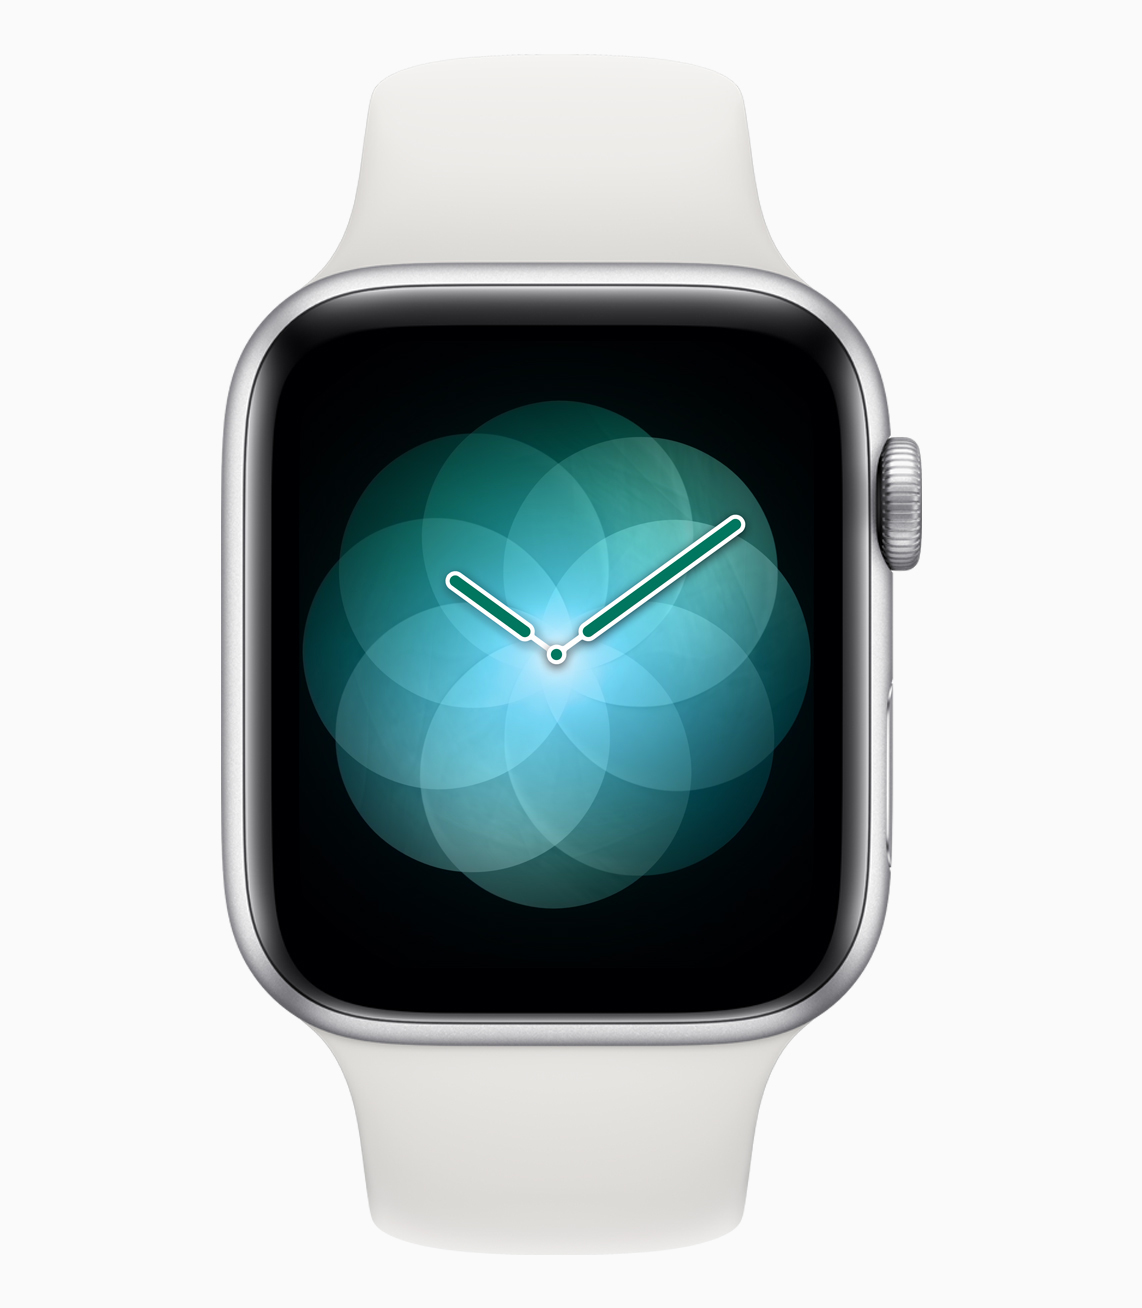 Смарт часы для айфона купить. Смарт часы эпл вотч 4. Айфон Эппл вотч 4. Айфон и часы эпл вотч. Apple watch s4.